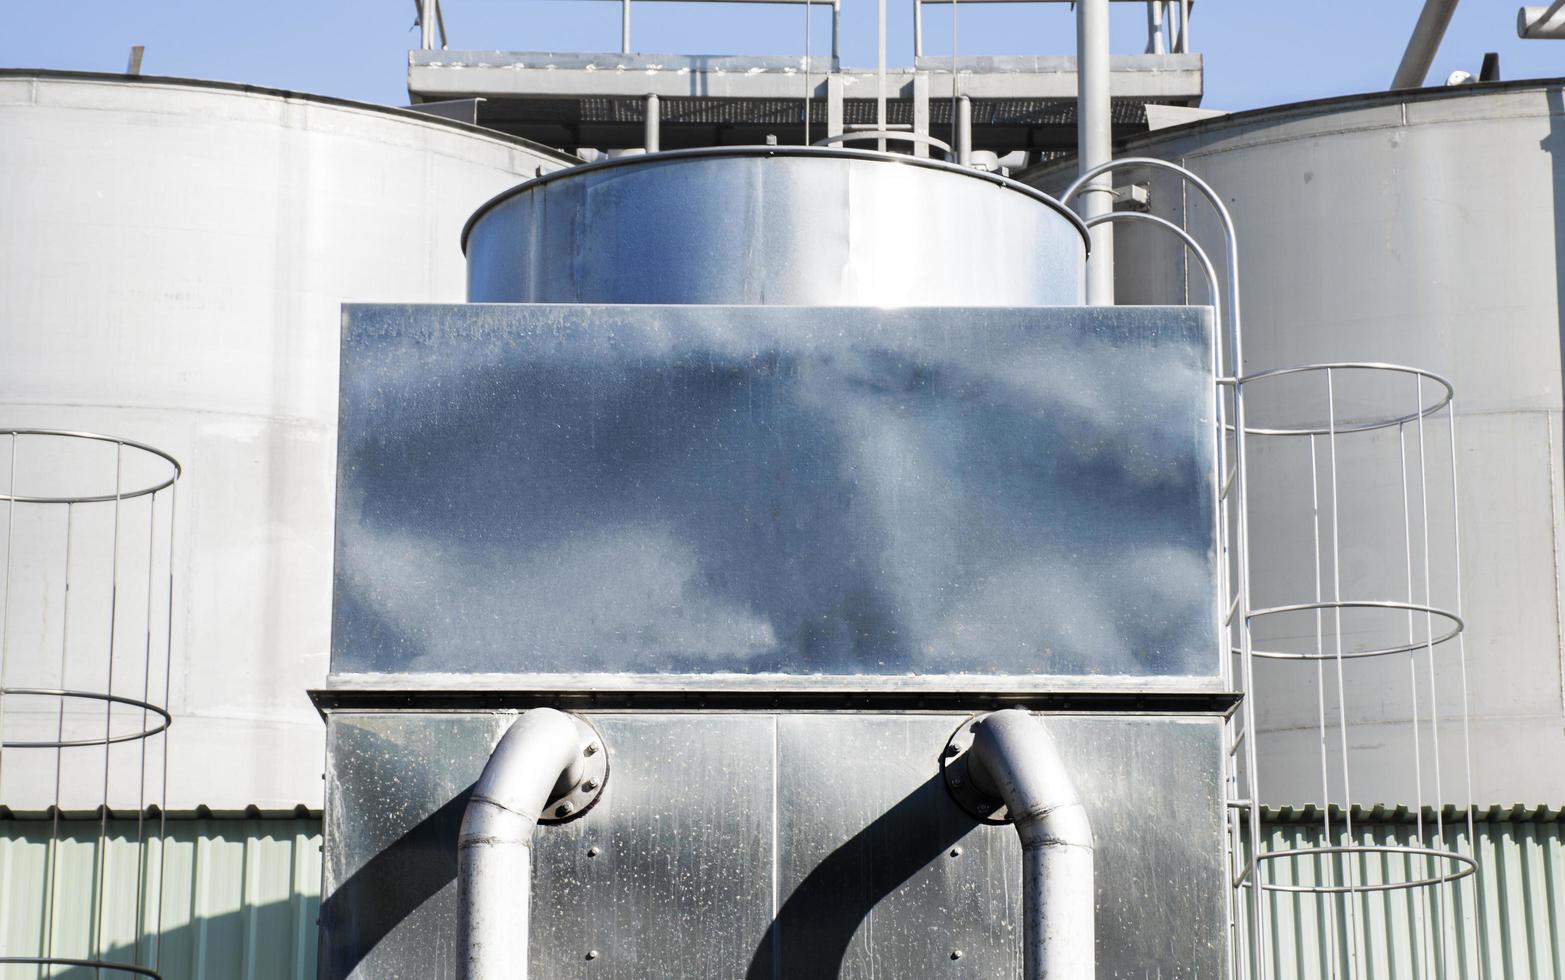 Kühlwasserturm in Industrieanlage foto